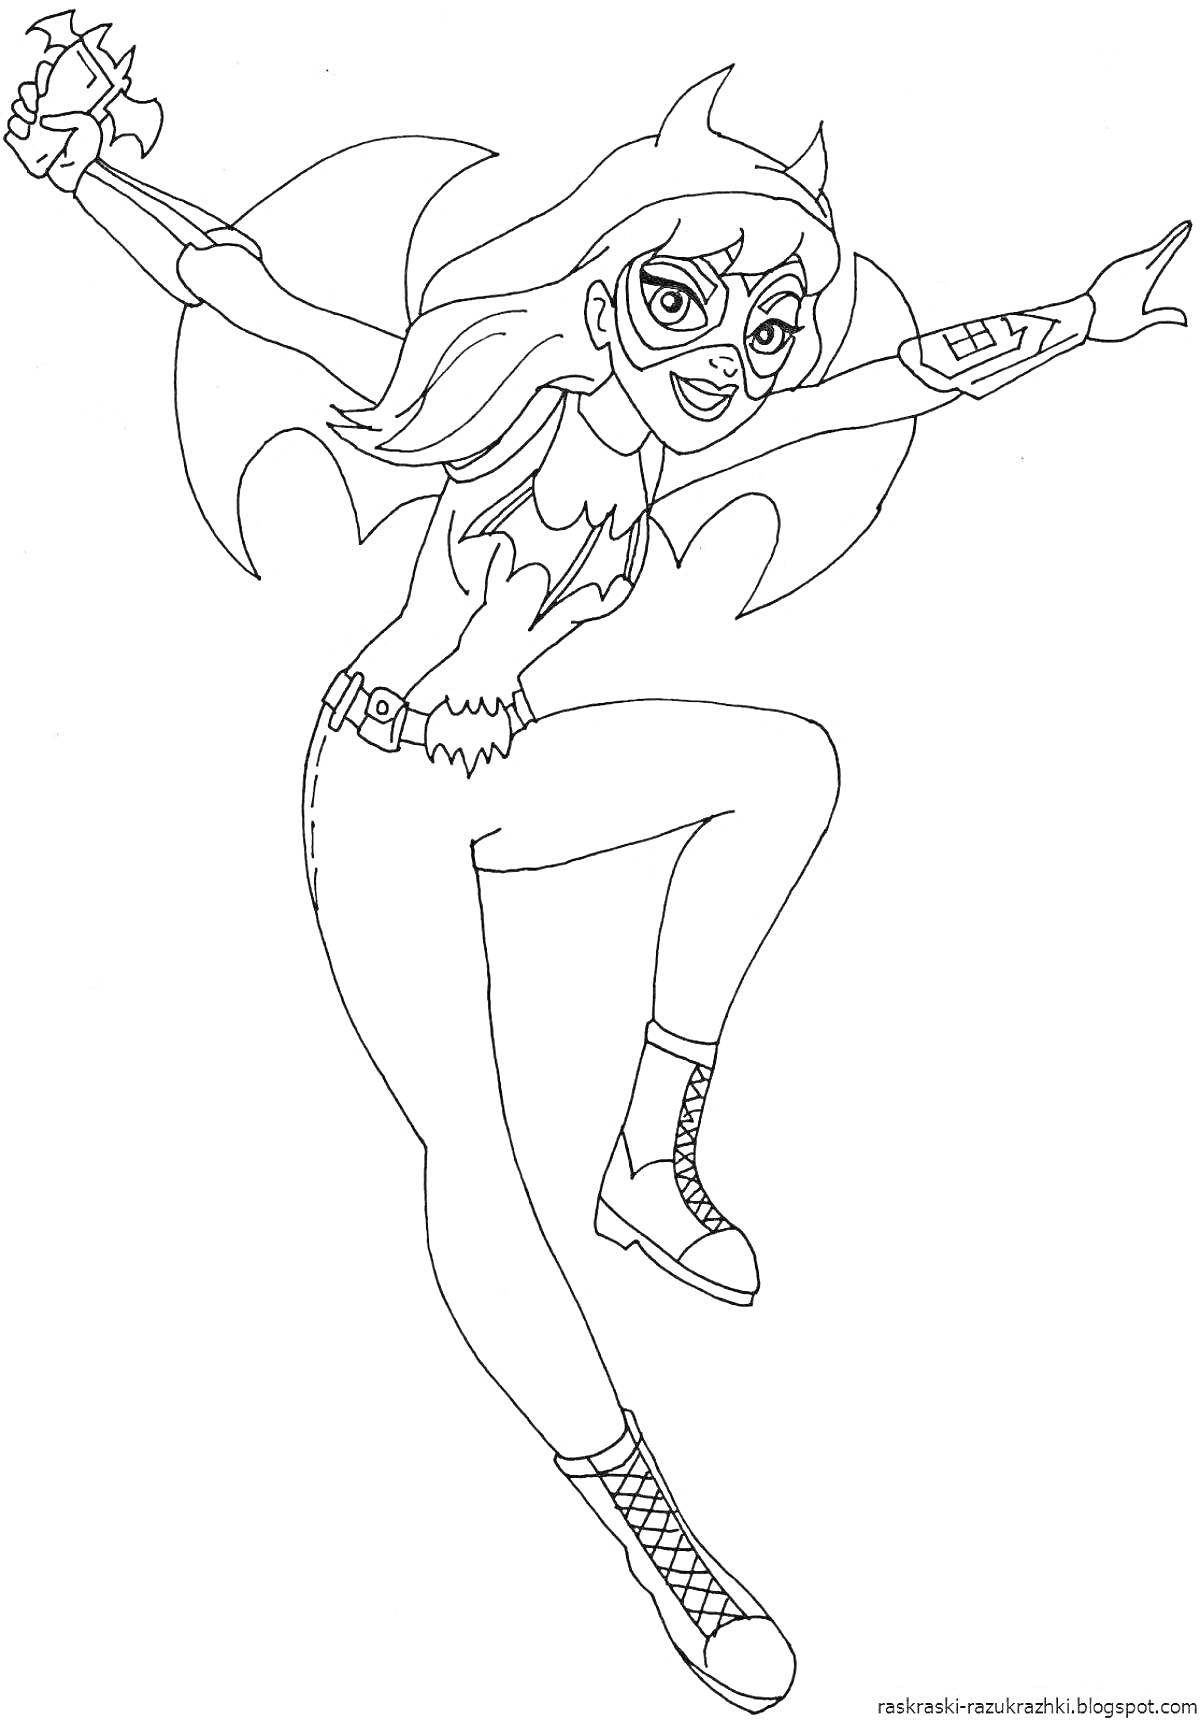 Раскраска Девочка-супергерой с маской, в костюме с крыльями, прыгающая с поднятой рукой